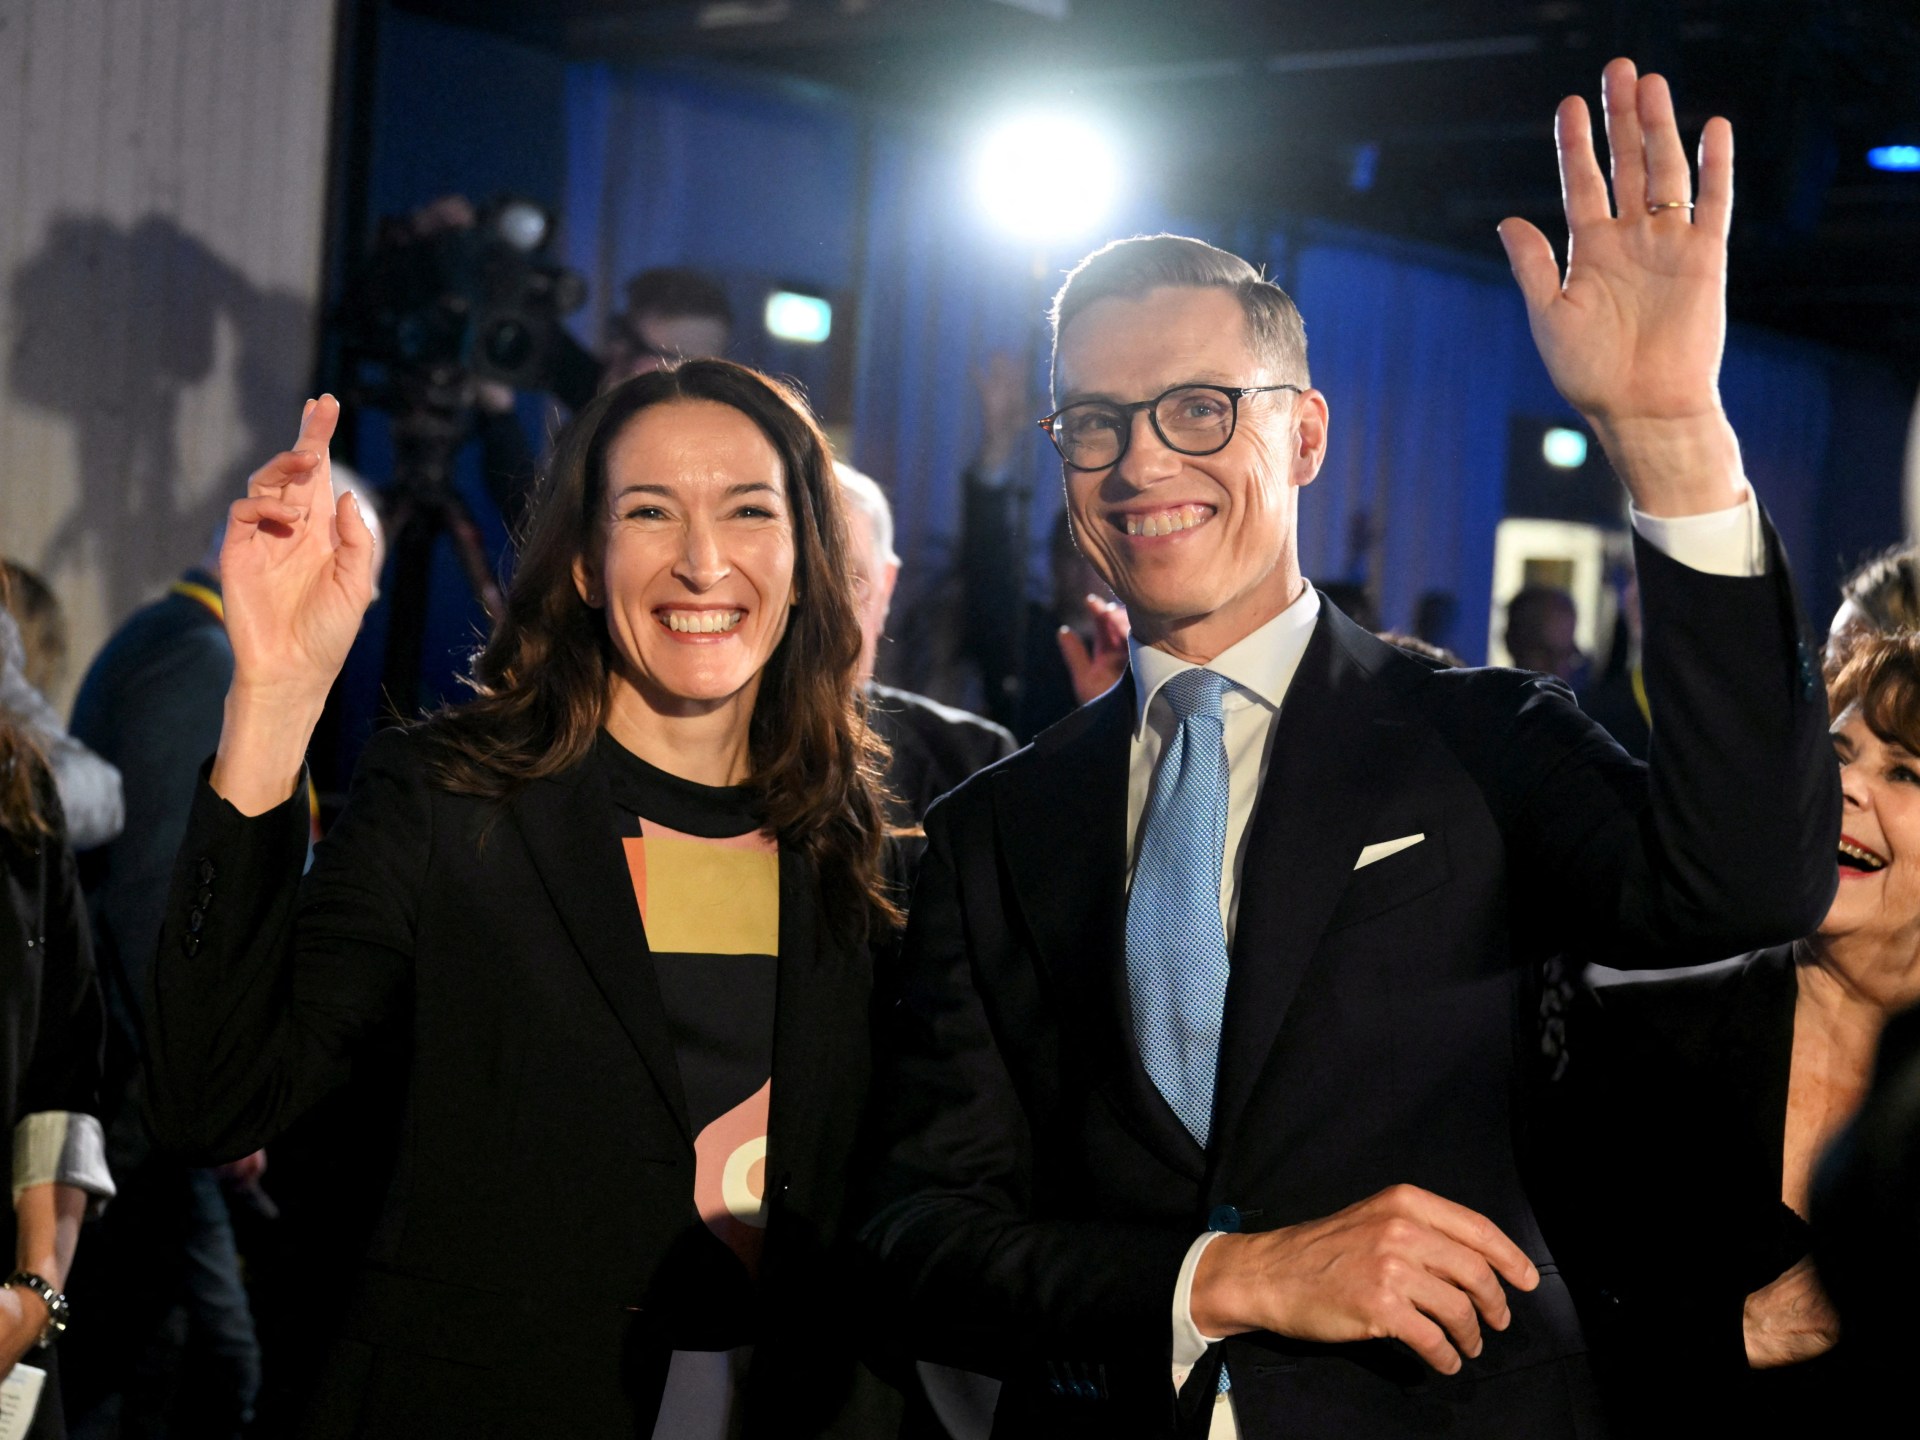 Staub gewinnt knapp die erste Runde der finnischen Präsidentschaftswahl |  Wahlnachrichten